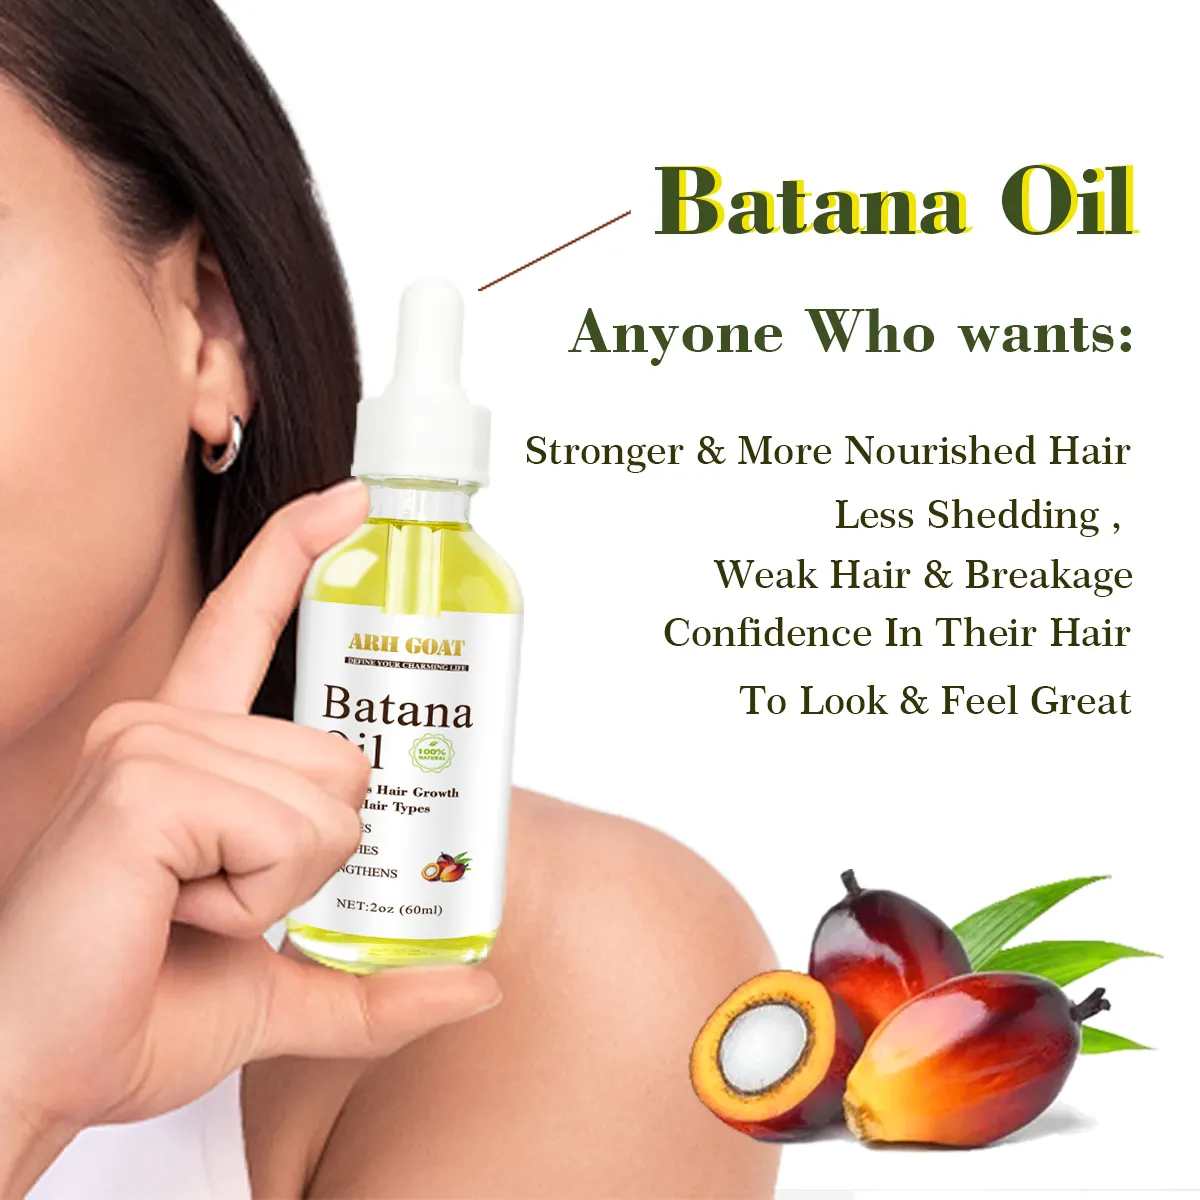 Venta al por mayor de aceite de batana natural de marca privada para la reparación del cabello Crea tu propia marca de aceite de batana natural 100% para el crecimiento del cabello